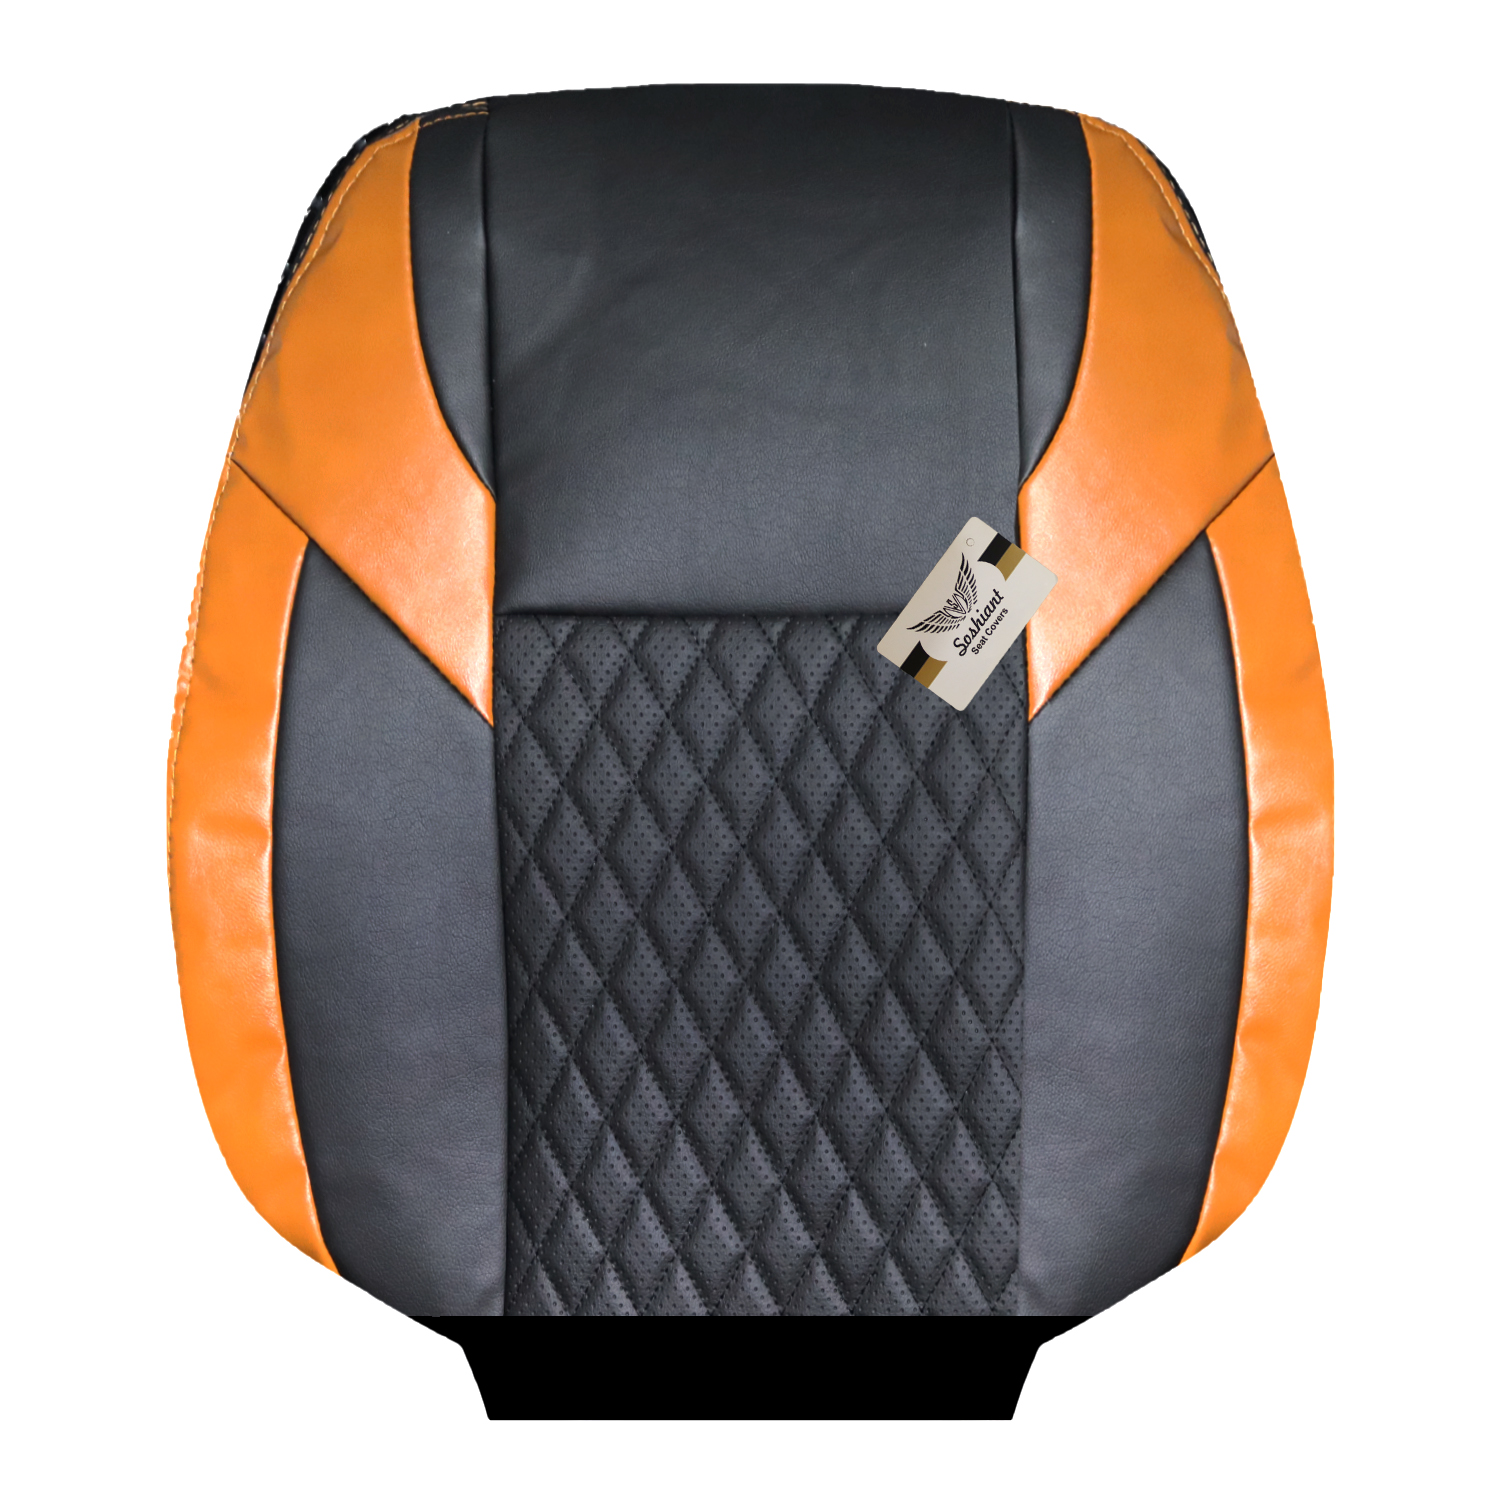 روکش صندلی خودرو سوشیانت مدل گندم مناسب برای پژو پارس